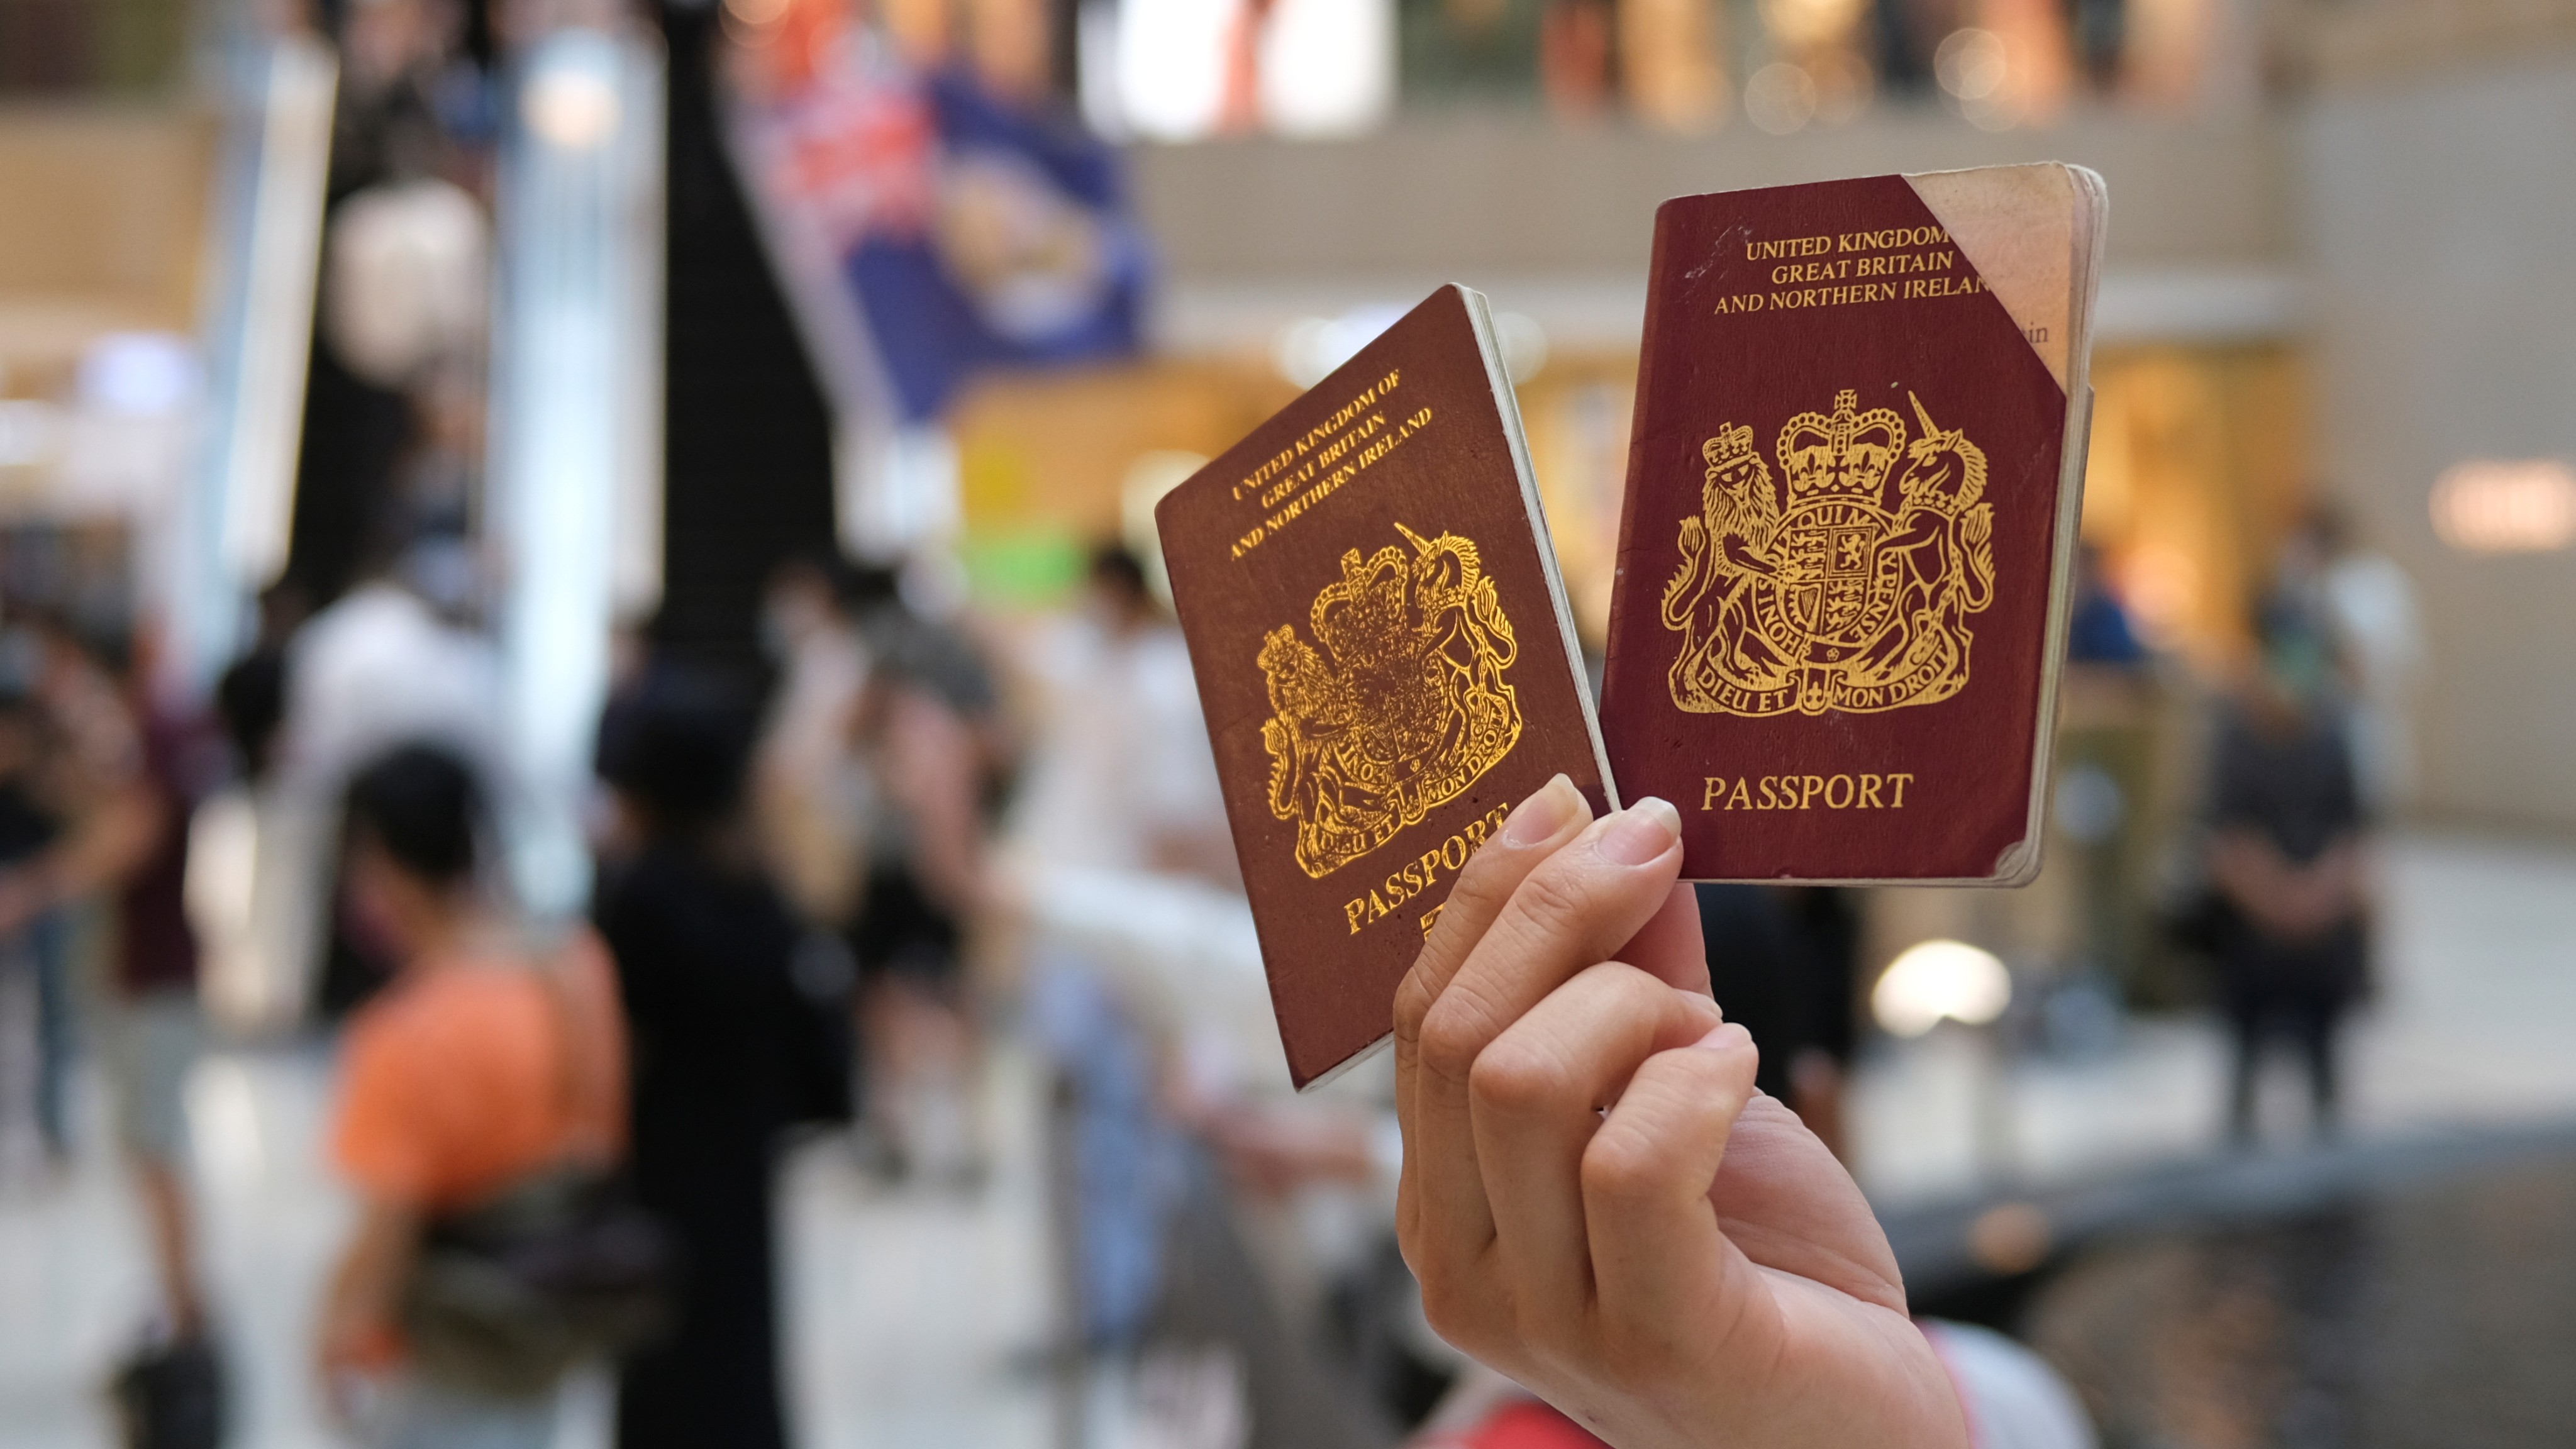 Khi bạn chuẩn bị đi du lịch hoặc sang nơi khác để làm việc, việc chuẩn bị hồ sơ xin visa và thủ tục thiệp passport là rất quan trọng để đảm bảo quyền lợi của bạn. Hãy để chúng tôi giúp bạn tìm hiểu những thông tin cần thiết để có được chuyến du lịch hay công tác suôn sẻ và an toàn.